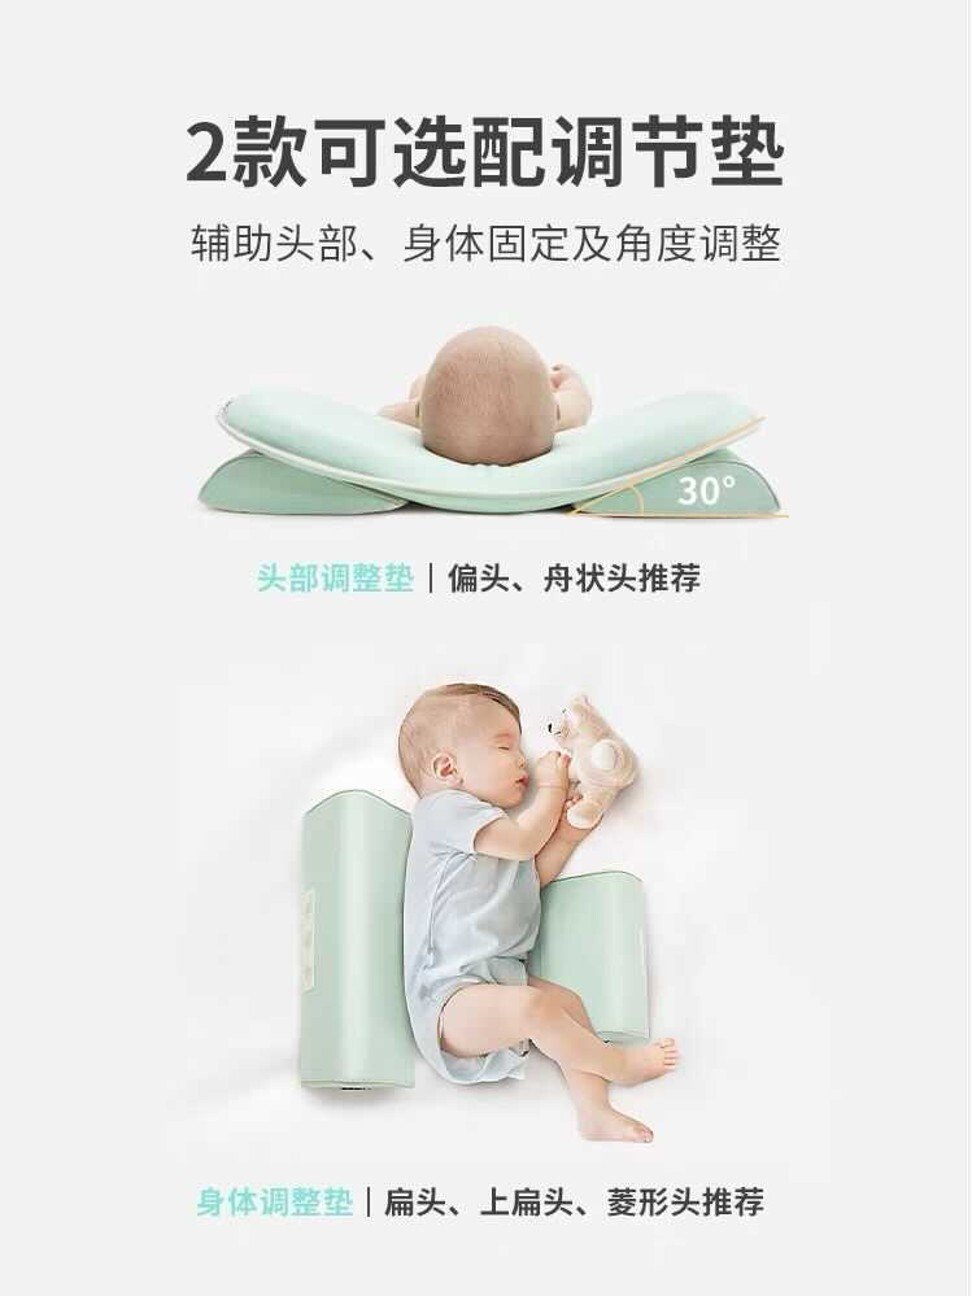 Trào lưu mới ở Trung Quốc, cha mẹ đội mũ bảo hiểm và đắp khuôn cho con để đầu tròn xinh hơn - Ảnh 2.